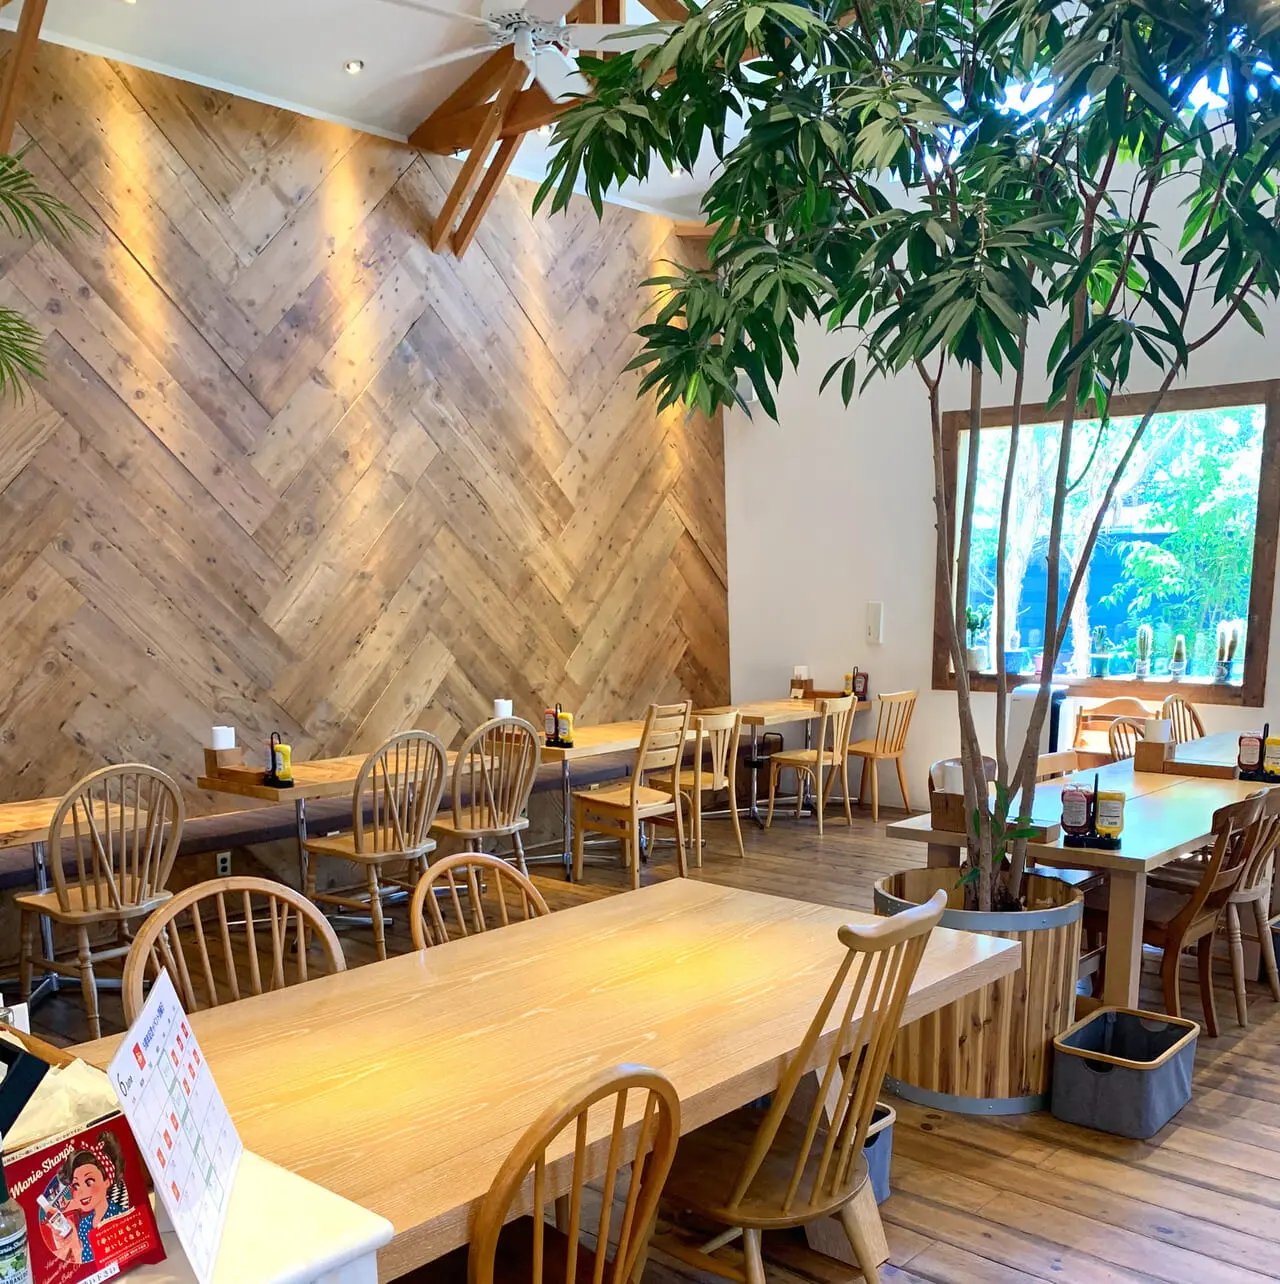 片山町のハンバーガーが人気のカフェ「CALULU(カルル)」で開店5周年の記念メニューが提供中!!